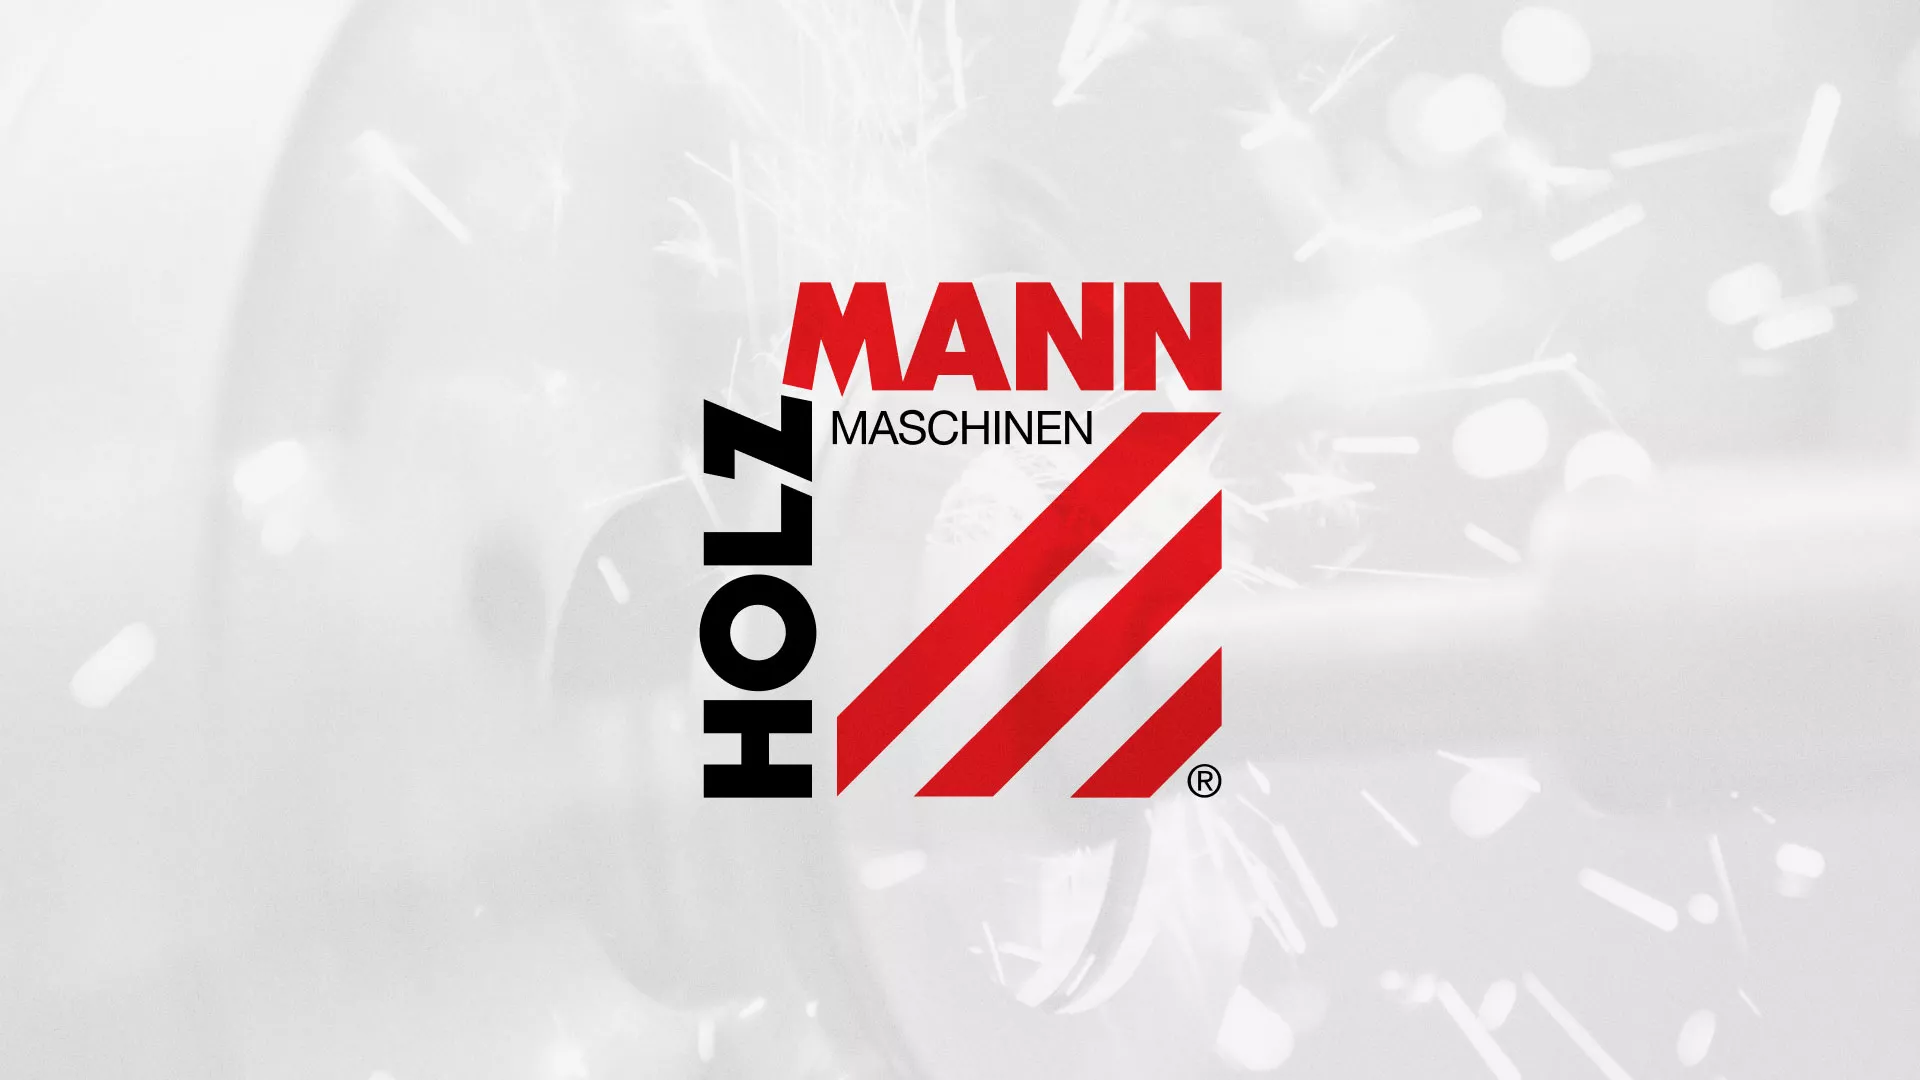 Создание сайта компании «HOLZMANN Maschinen GmbH» в Верхнем Уфалее